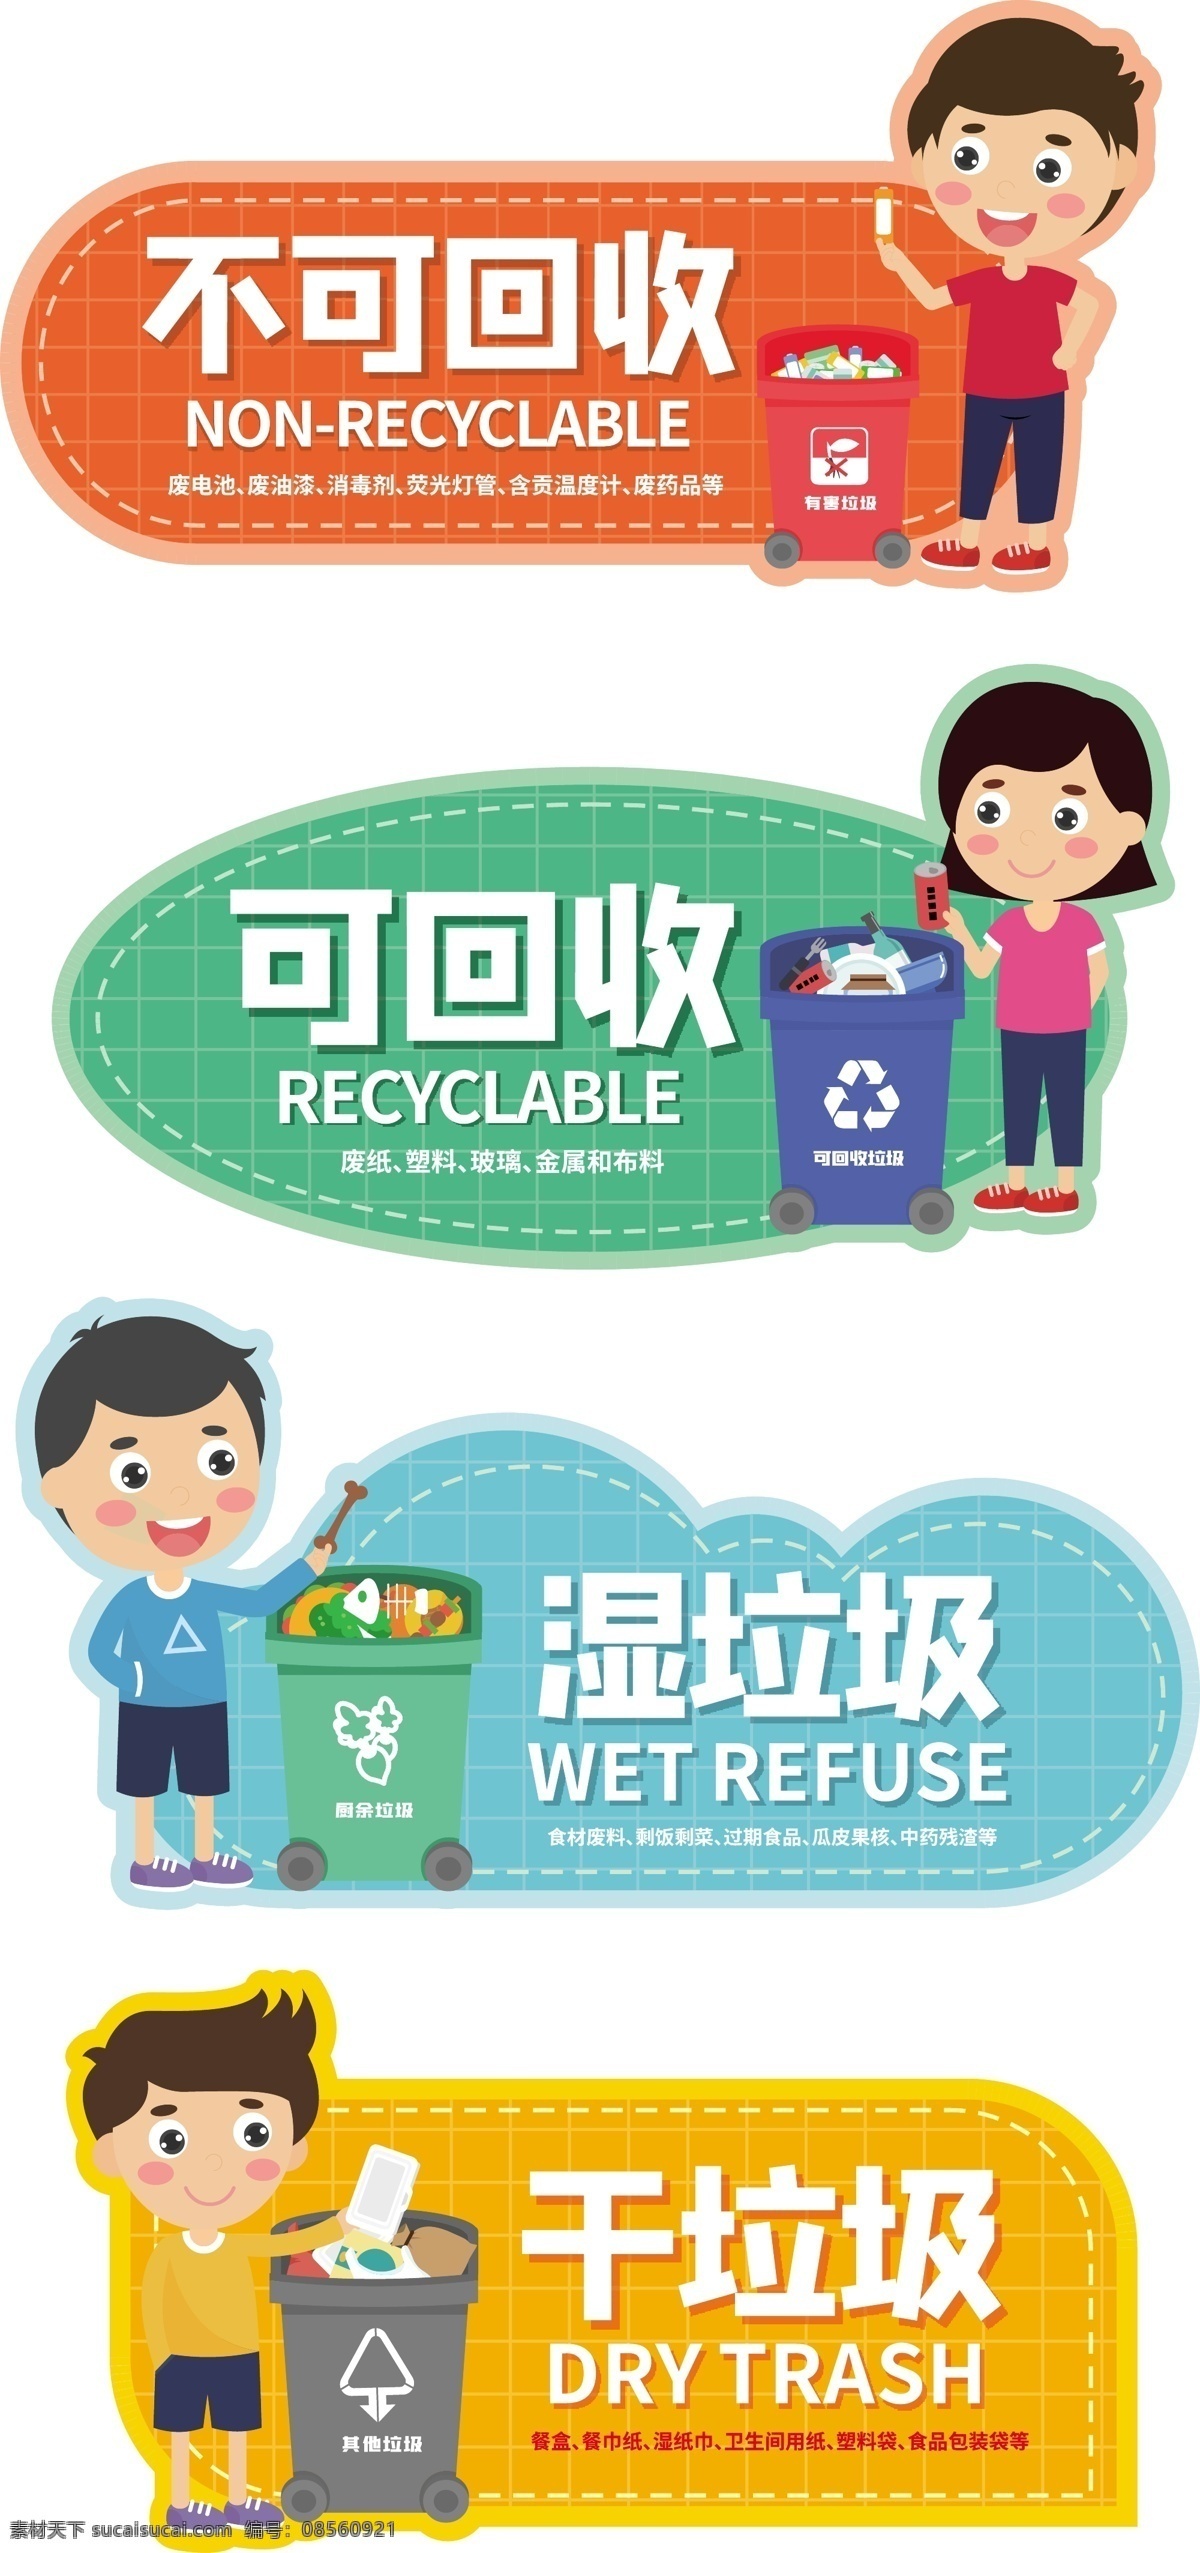 厨余垃圾图片 厨余垃圾 矢量图 垃圾桶 logo 标志 活动物料